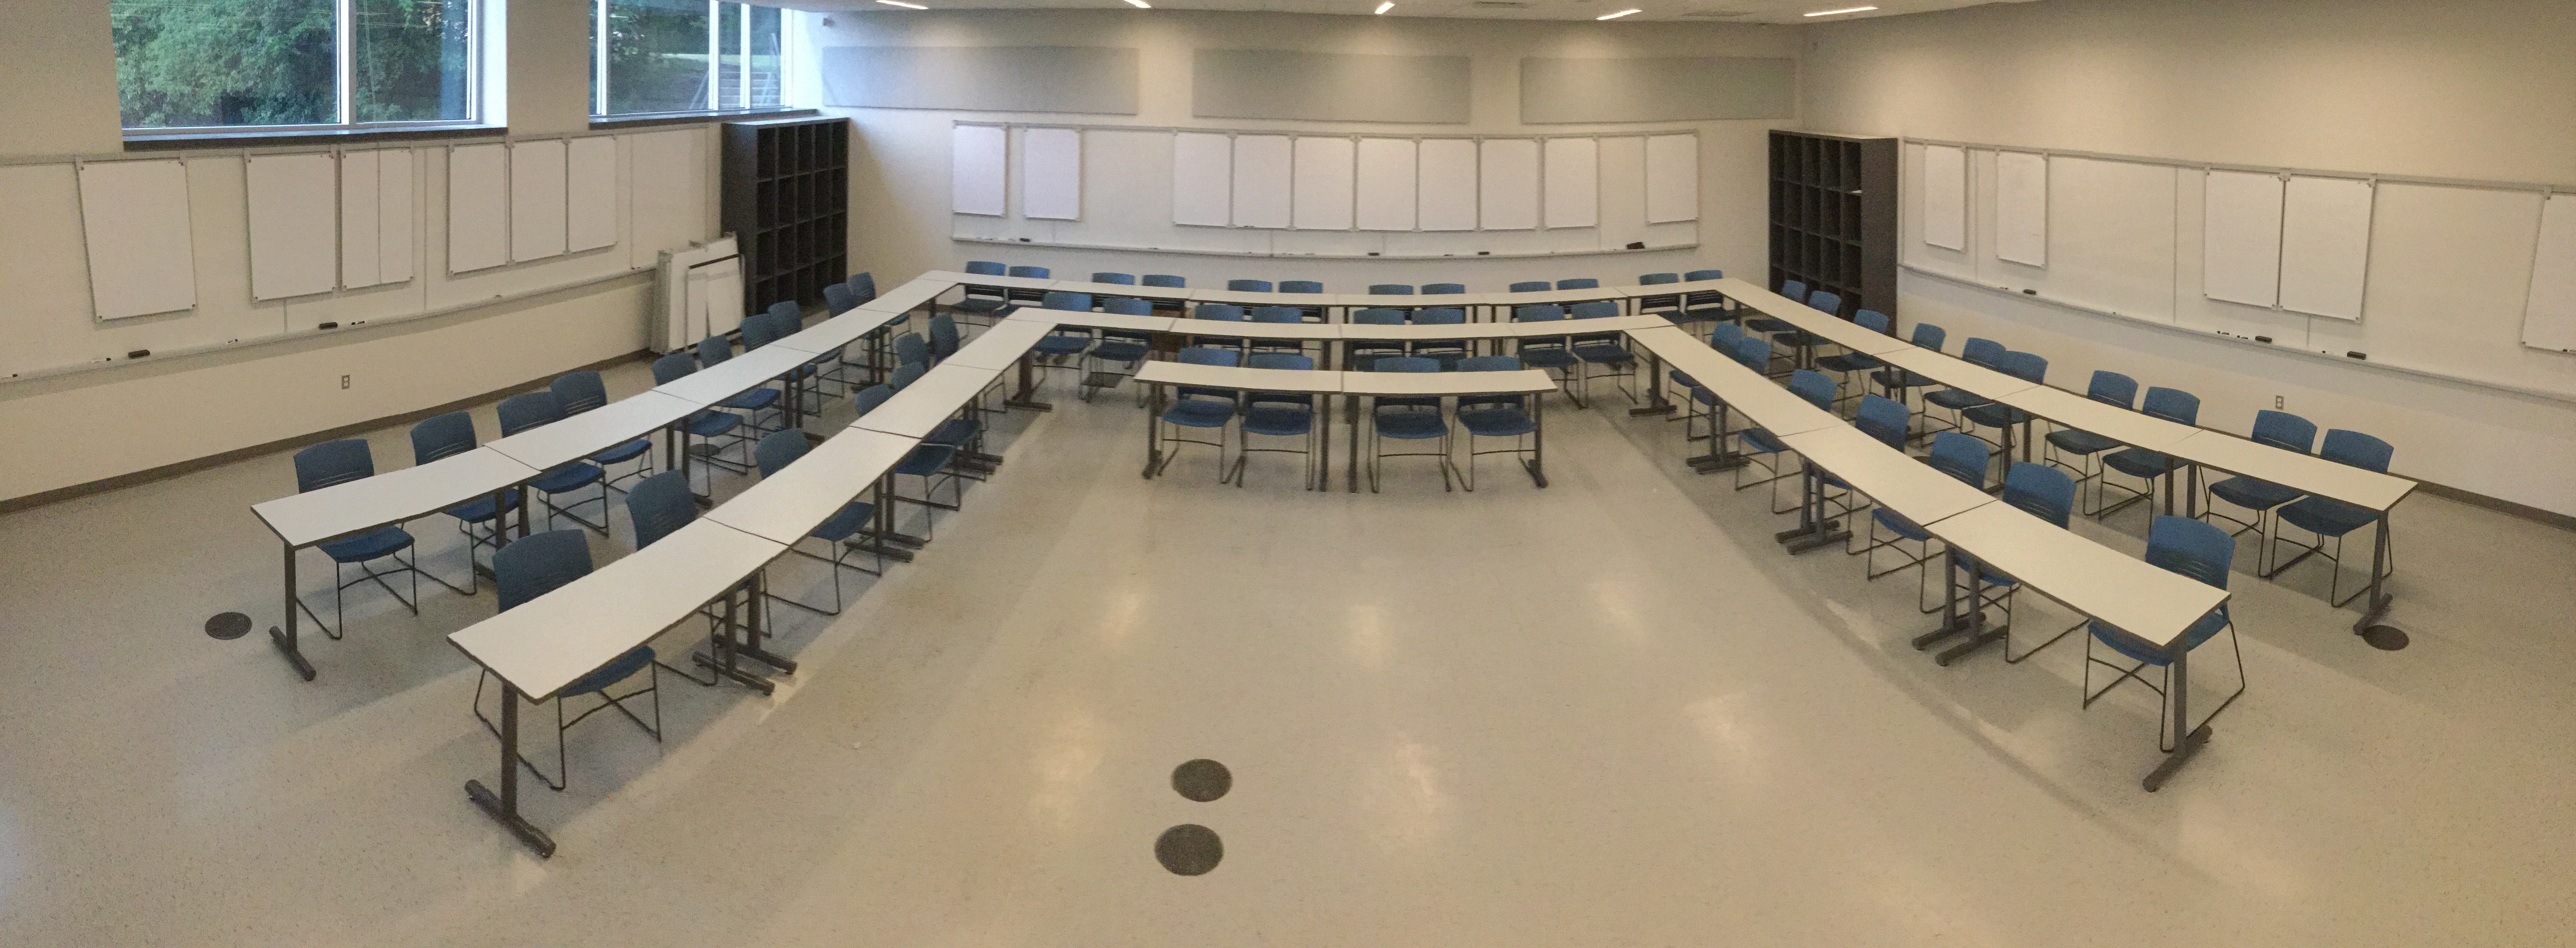 image of WALS-Flex classroom